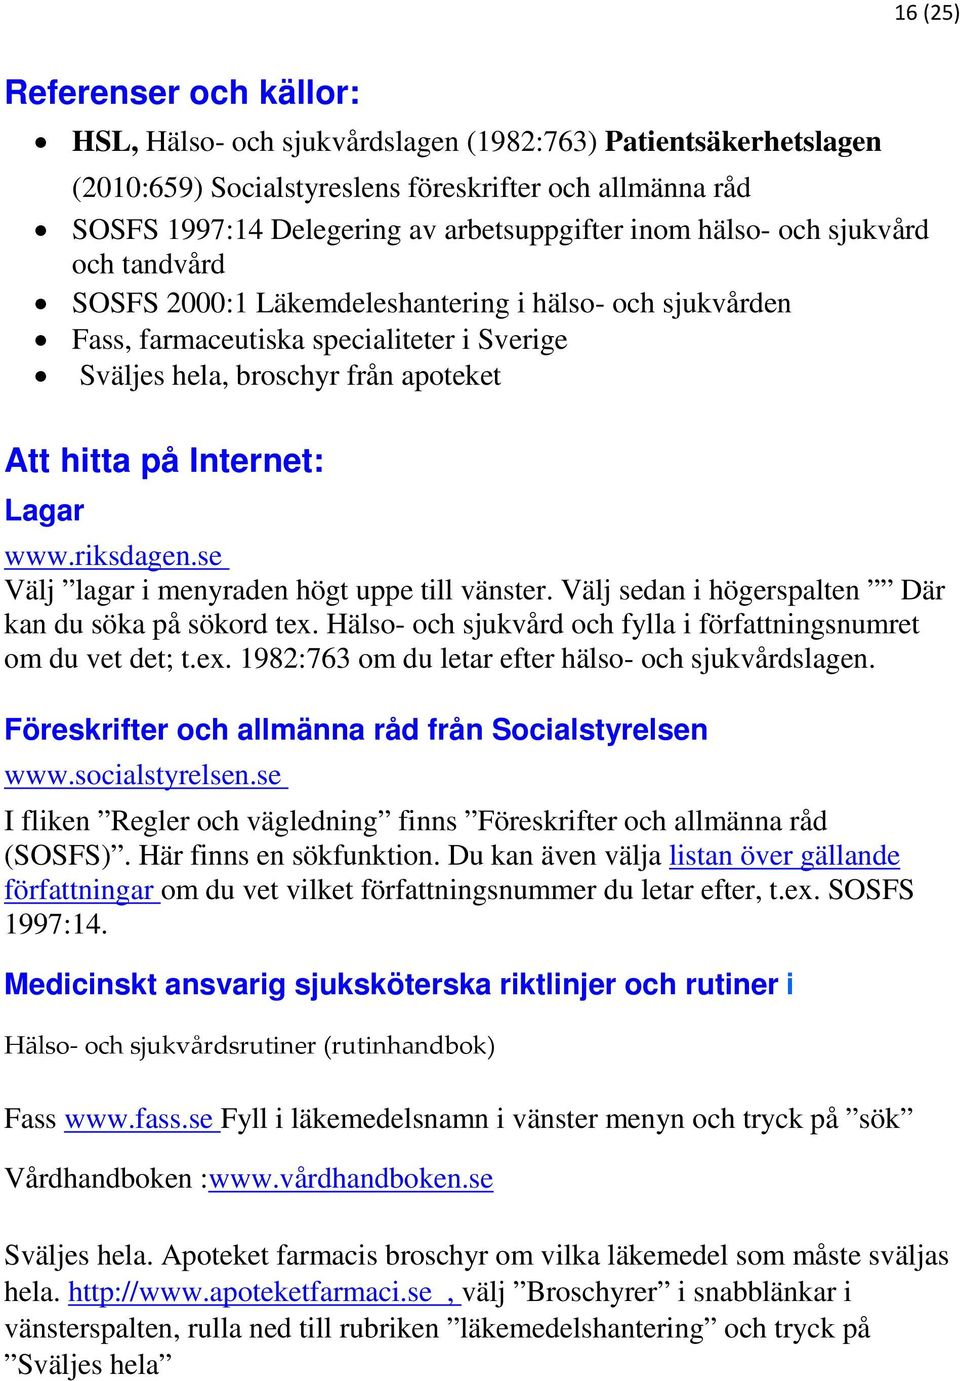 Lagar www.riksdagen.se Välj lagar i menyraden högt uppe till vänster. Välj sedan i högerspalten Där kan du söka på sökord tex. Hälso- och sjukvård och fylla i författningsnumret om du vet det; t.ex. 1982:763 om du letar efter hälso- och sjukvårdslagen.